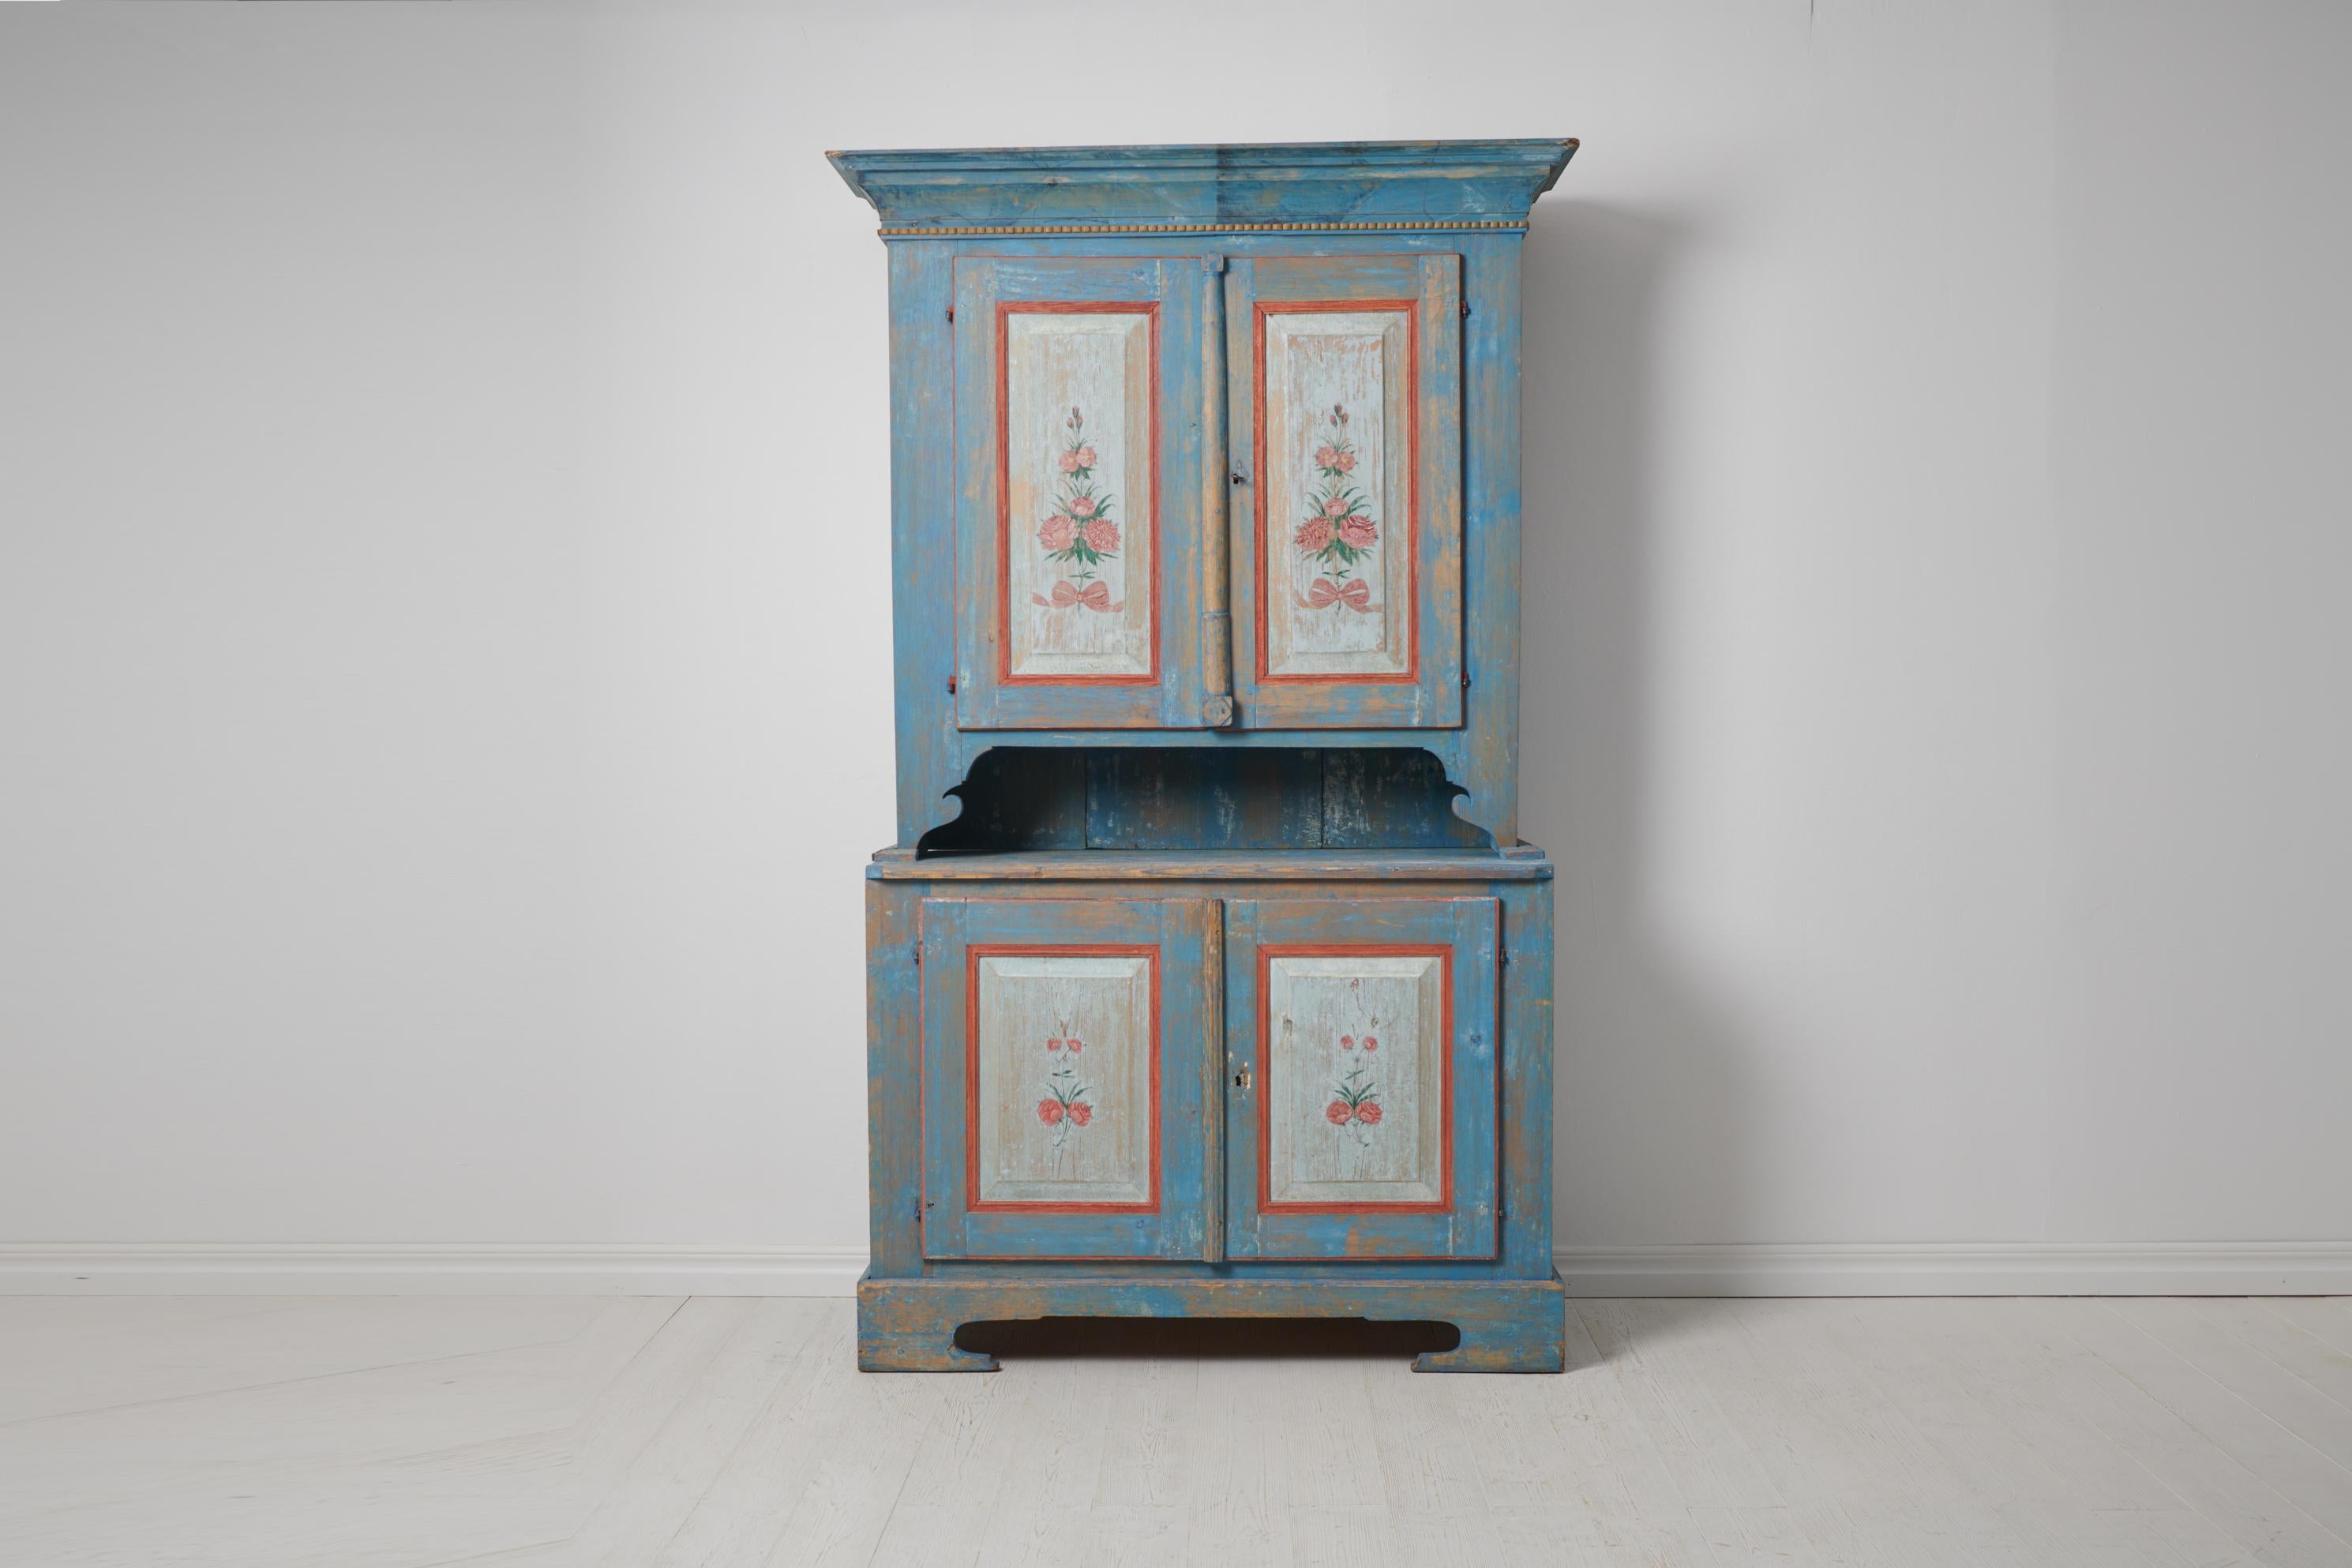 Ancienne armoire bleue suédoise. Le meuble est un authentique meuble de maison de campagne suédoise du début des années 1800, vers 1820. L'armoire est en deux parties et fabriquée à la main en pin massif. La peinture est d'origine et présente un